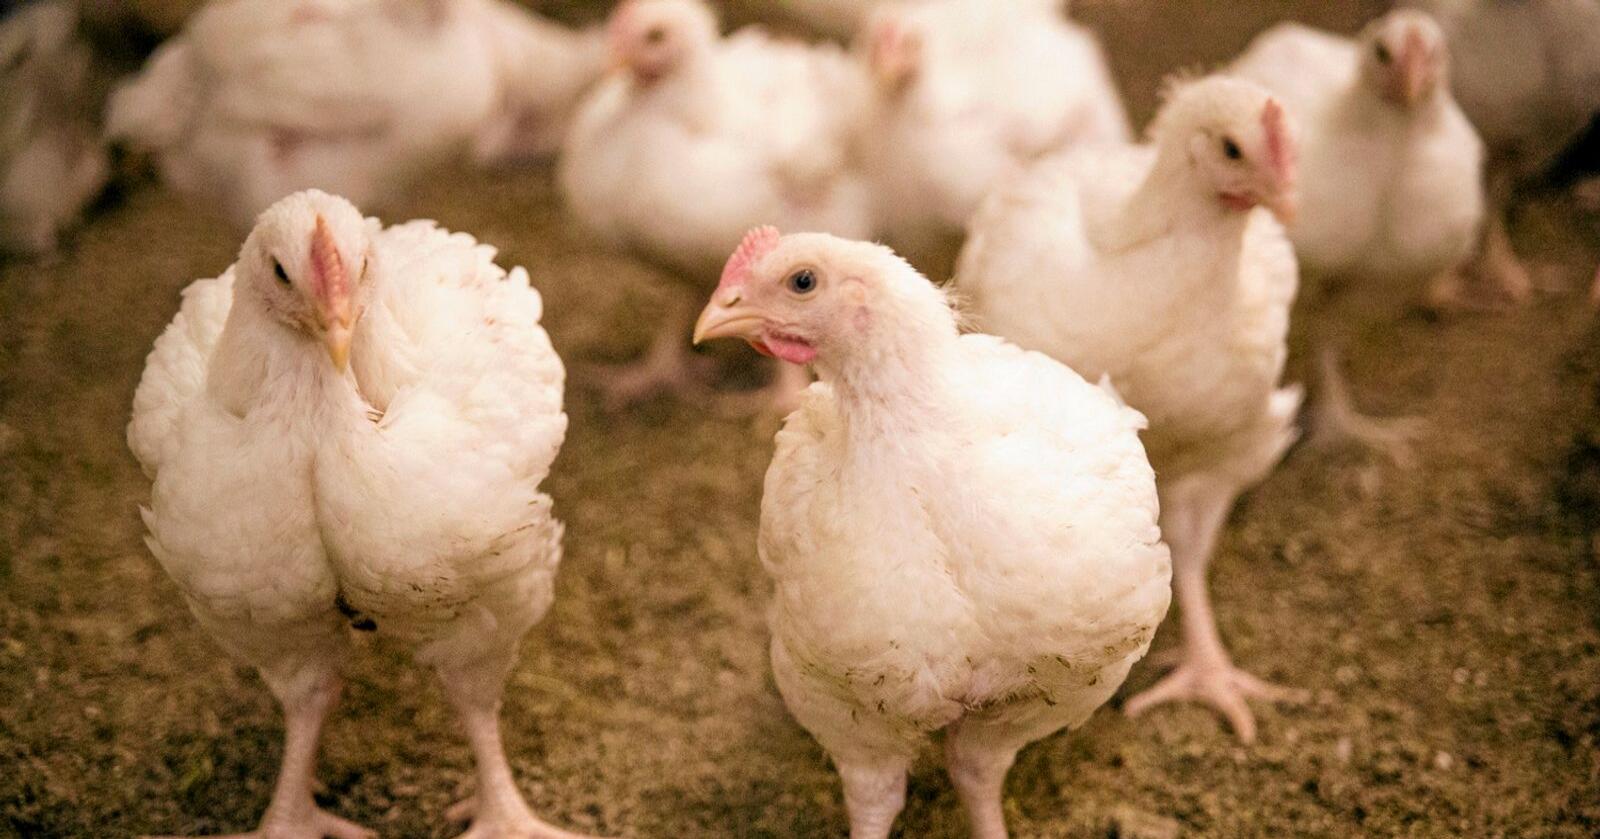 For å halde nok varme i fjøsa krev kyllingproduksjon mykje energi, særleg på vinteren. Foto: Dyrevernalliansen